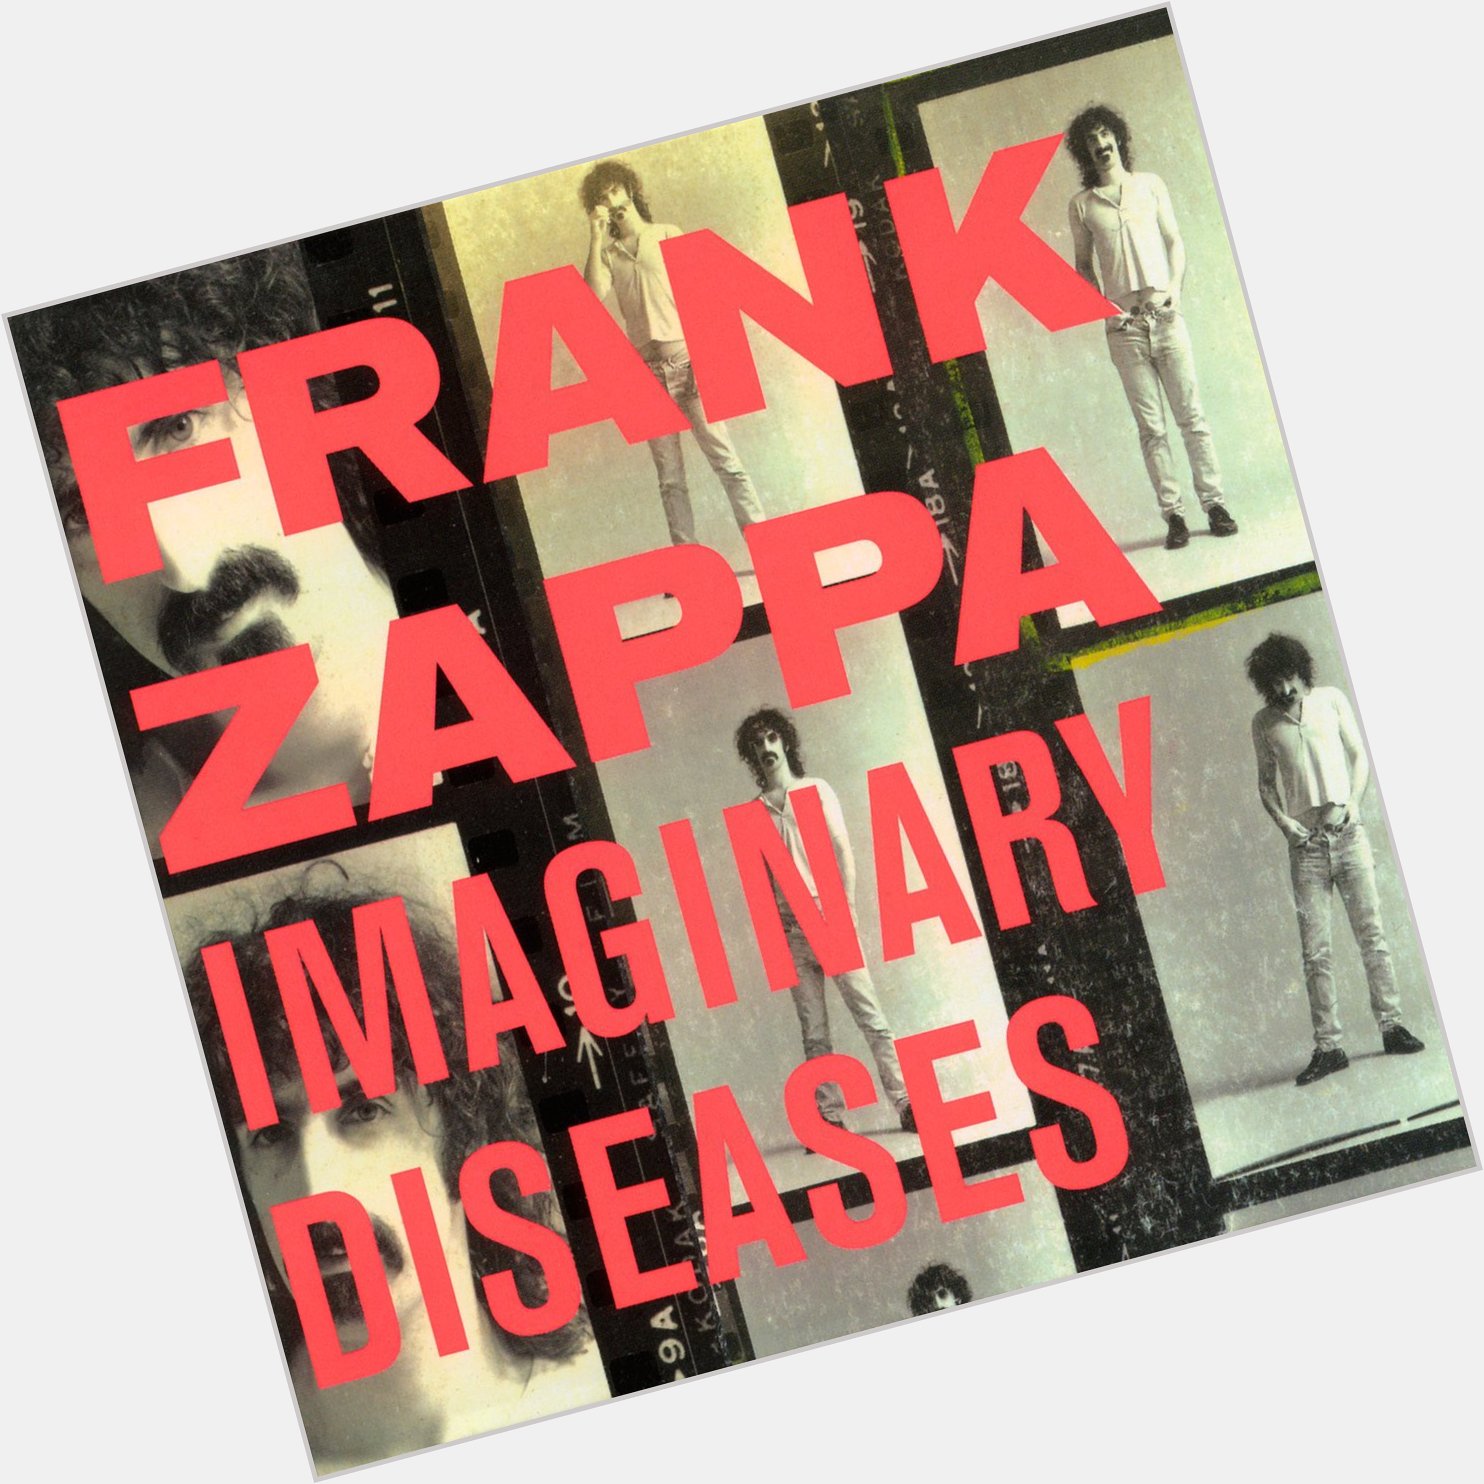 Happy Birthday Maestro Frank Zappa my favorite Zappa album       